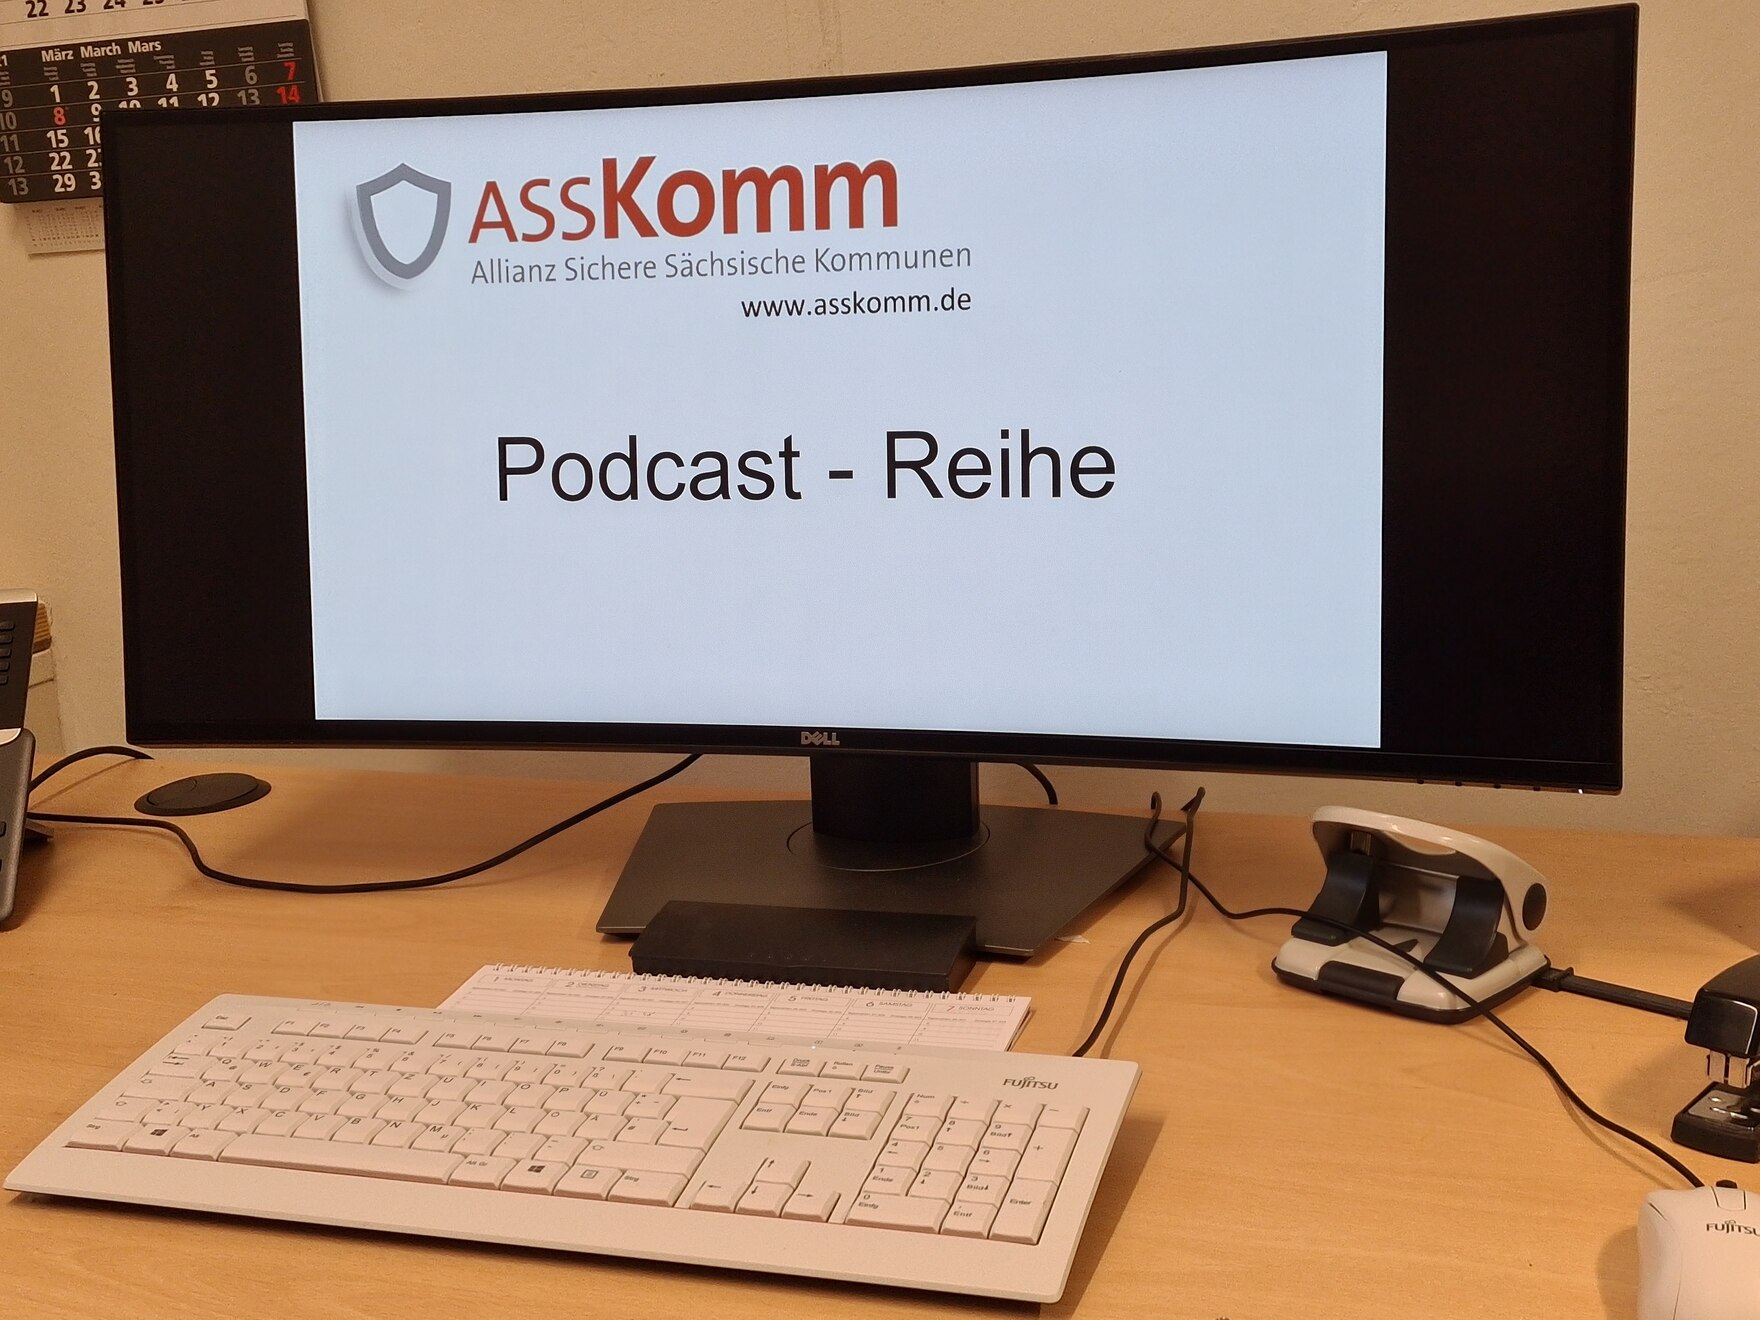 Ein Bildschirm mit der Aufschrift ASSKomm und Podcast-Reihe, davor eine Tastatur.